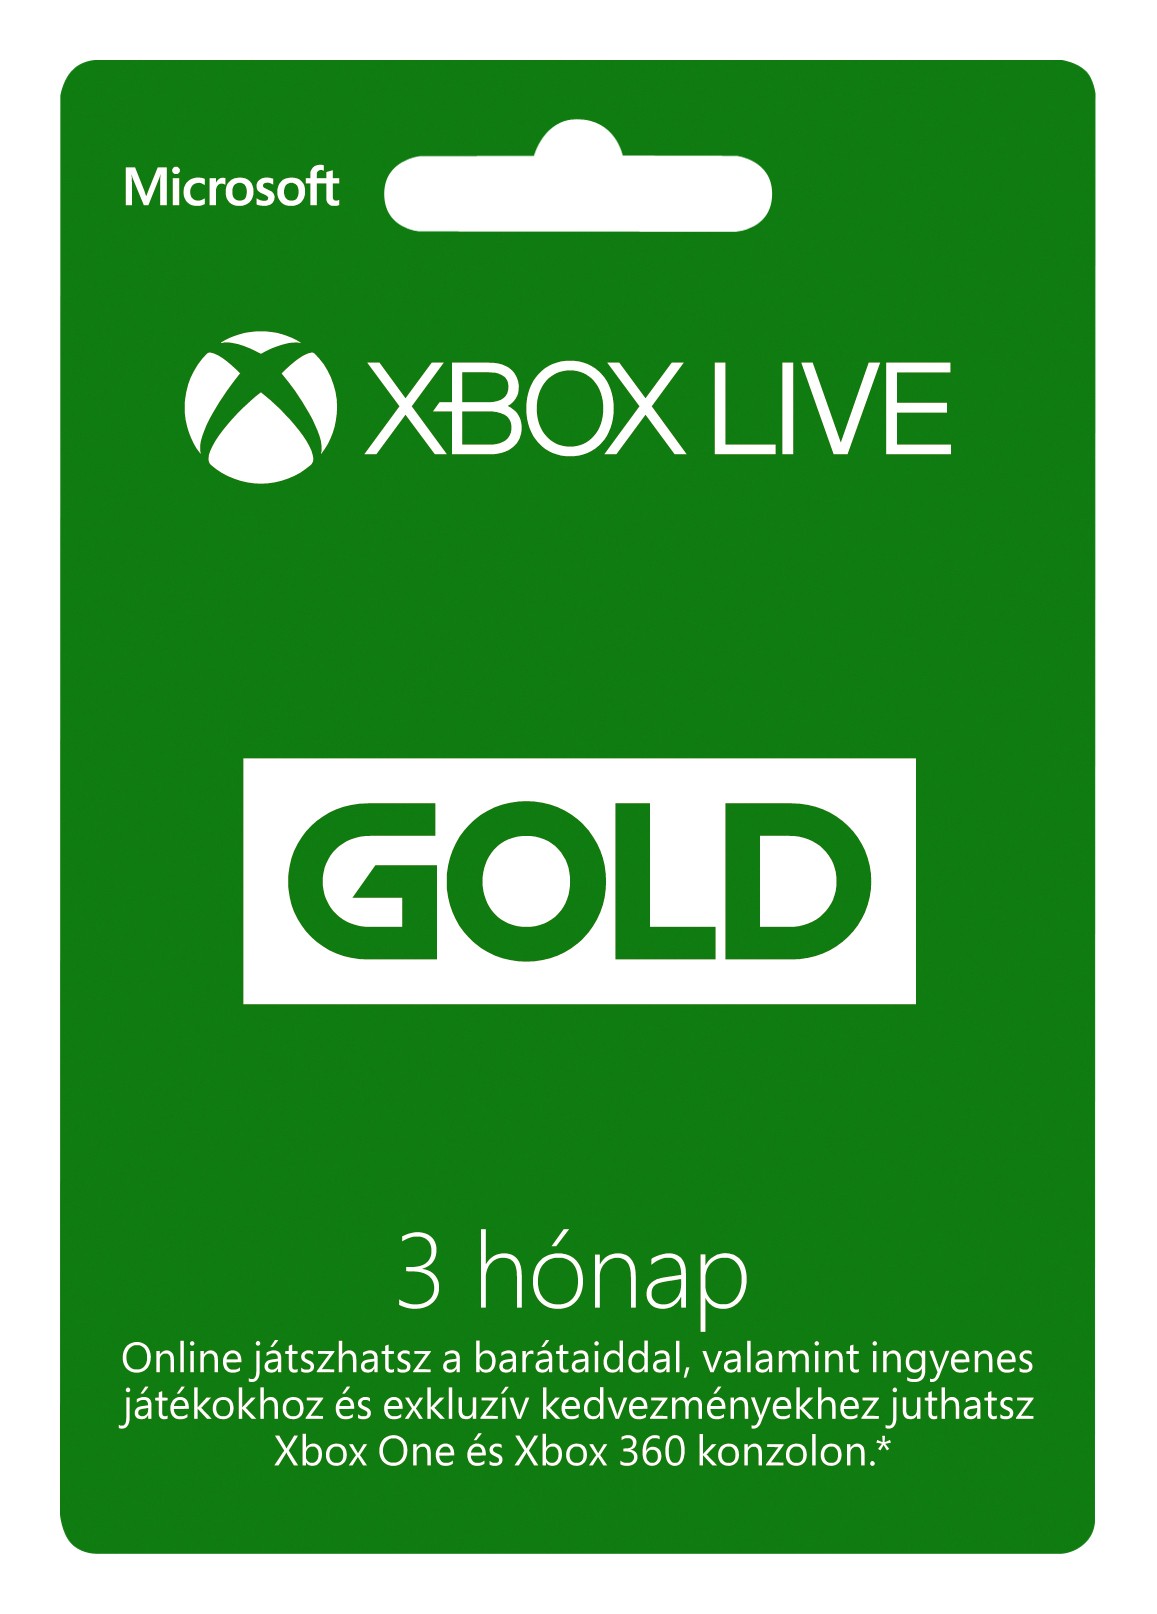 XBOX Live Gold 3 hónapos előfizetés